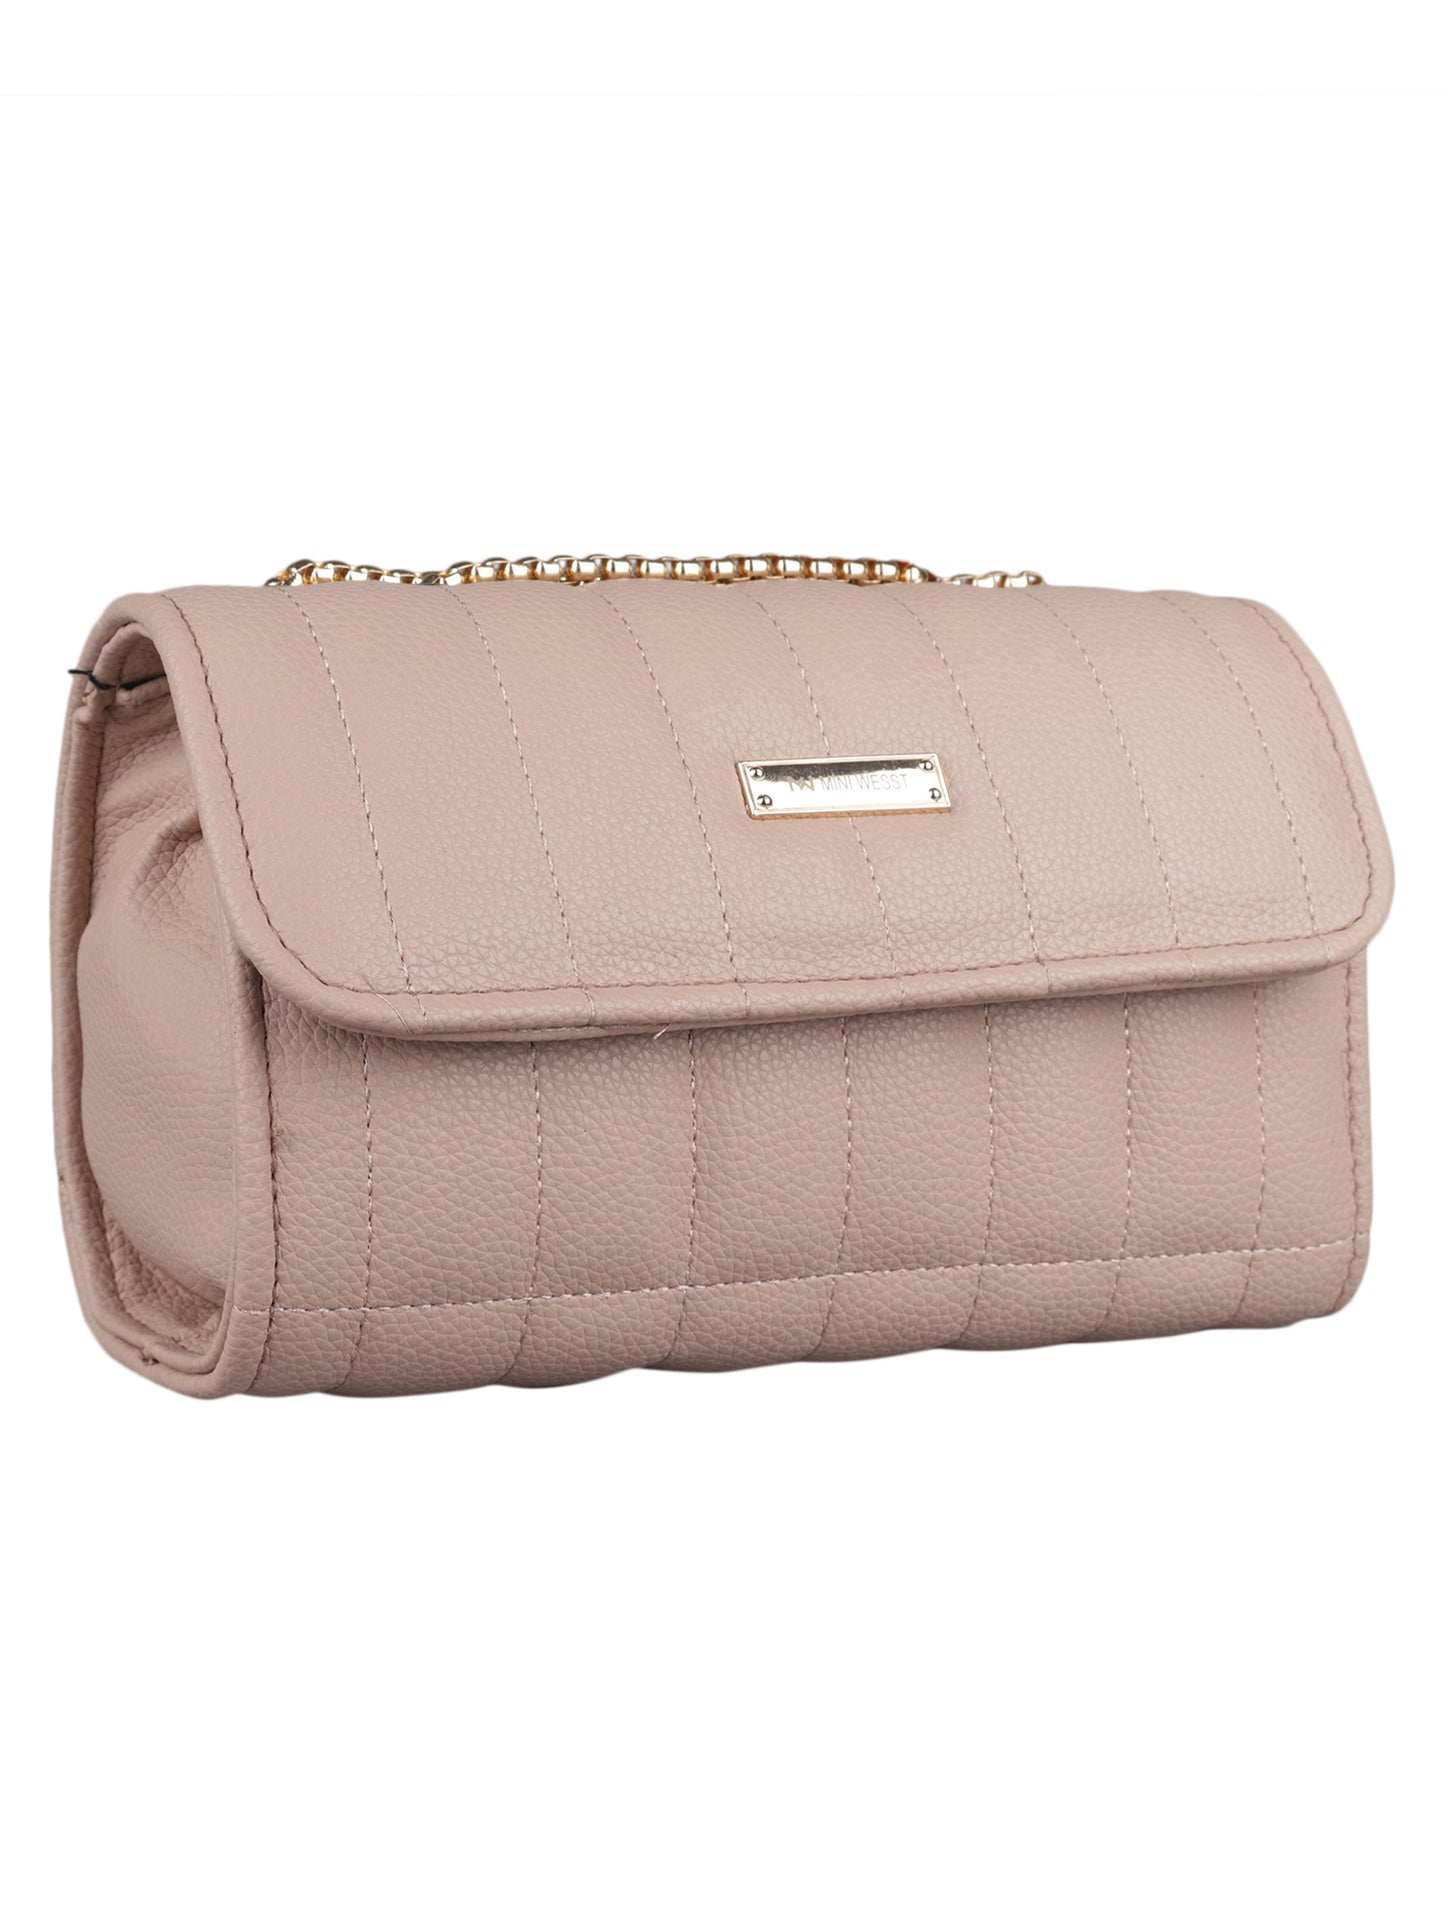 MINI WESST Women's Beige Handbags(MWHB043BE)